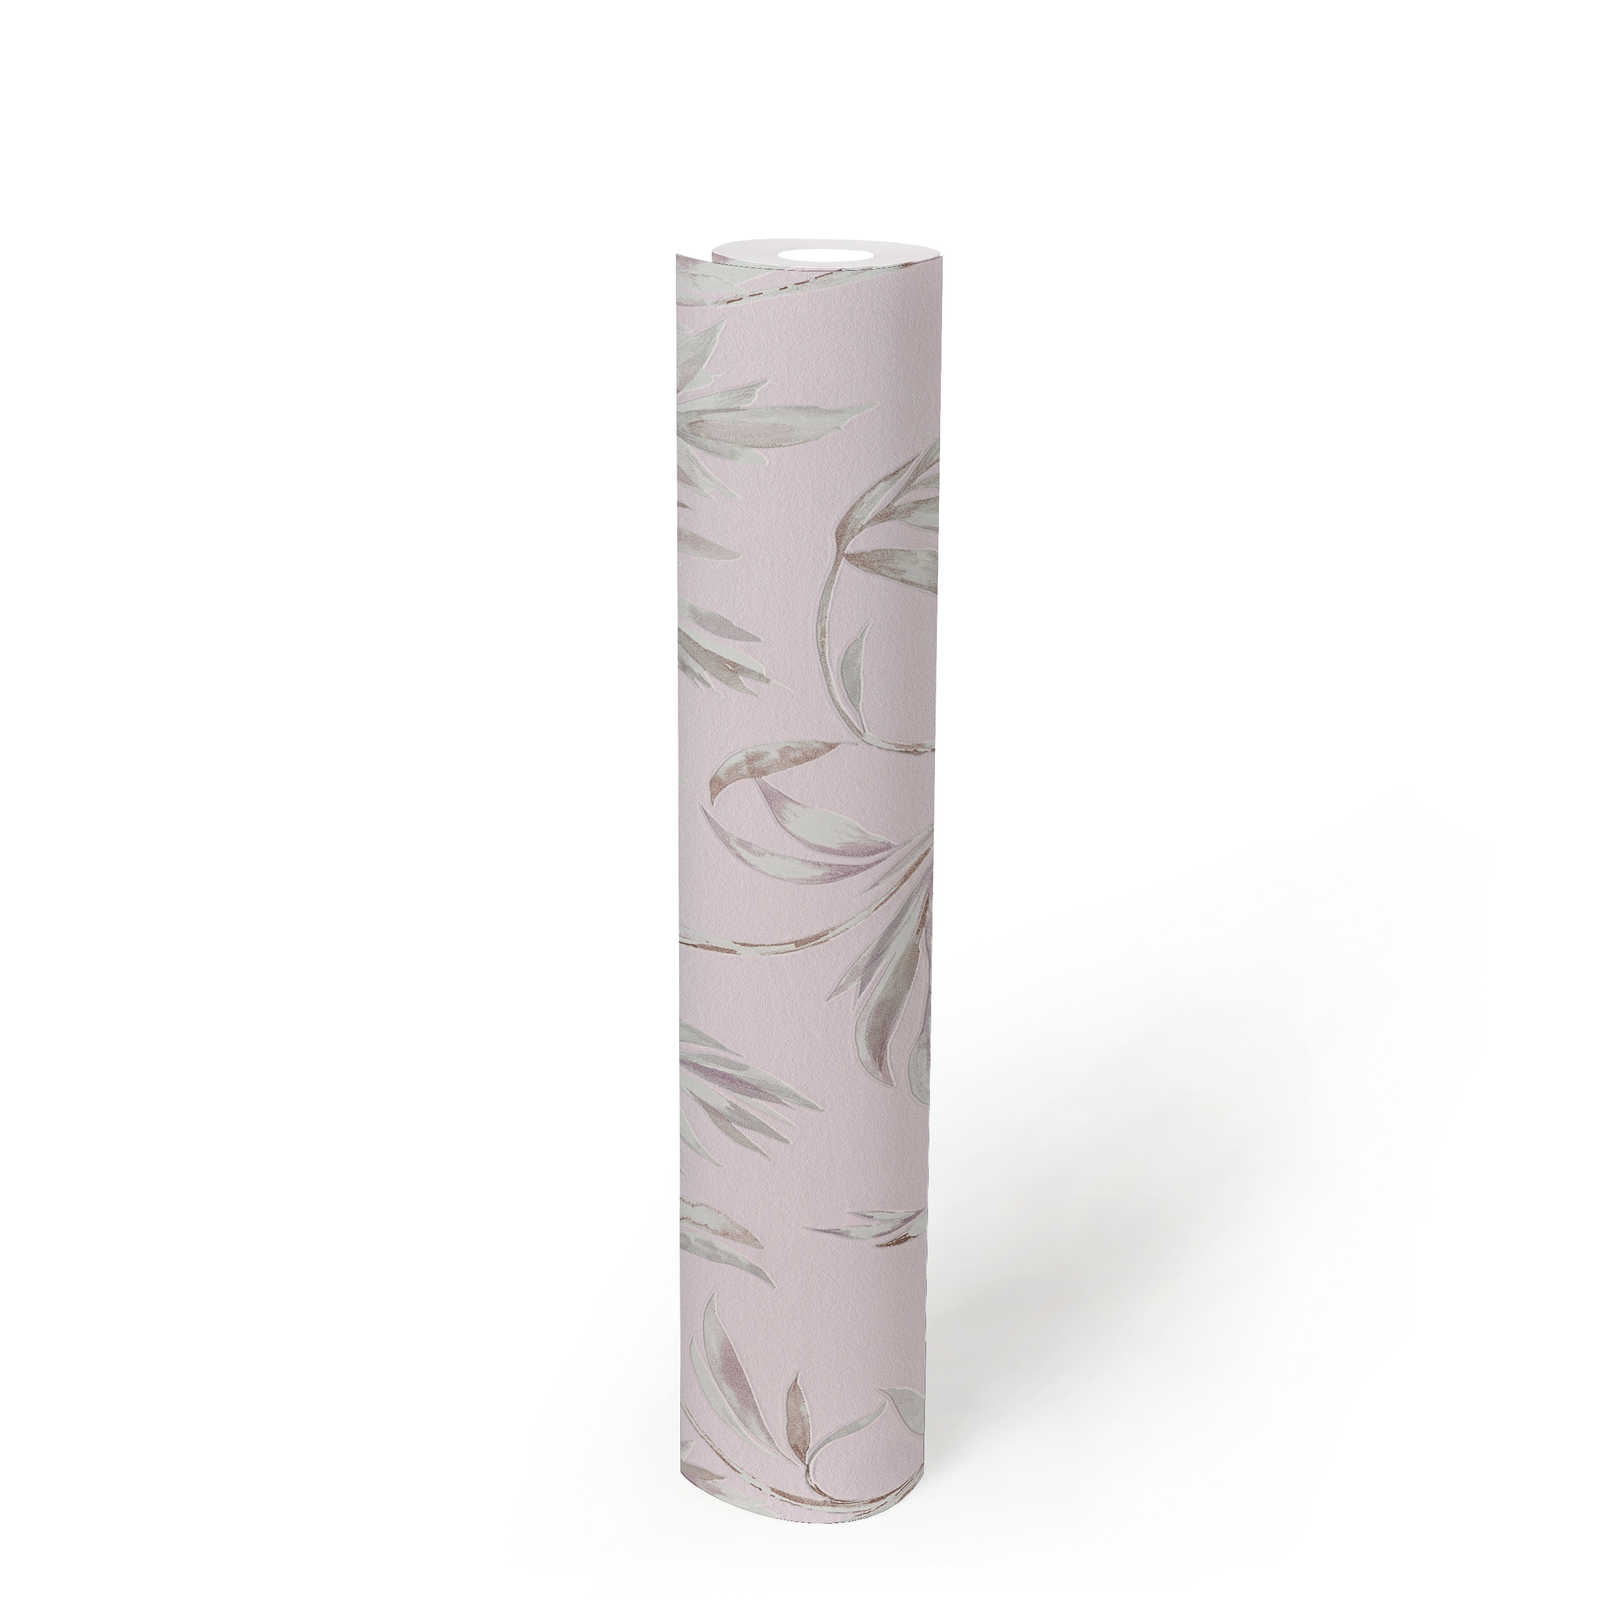             Feuilles Papier peint Rose Design style aquarelle - Violet
        